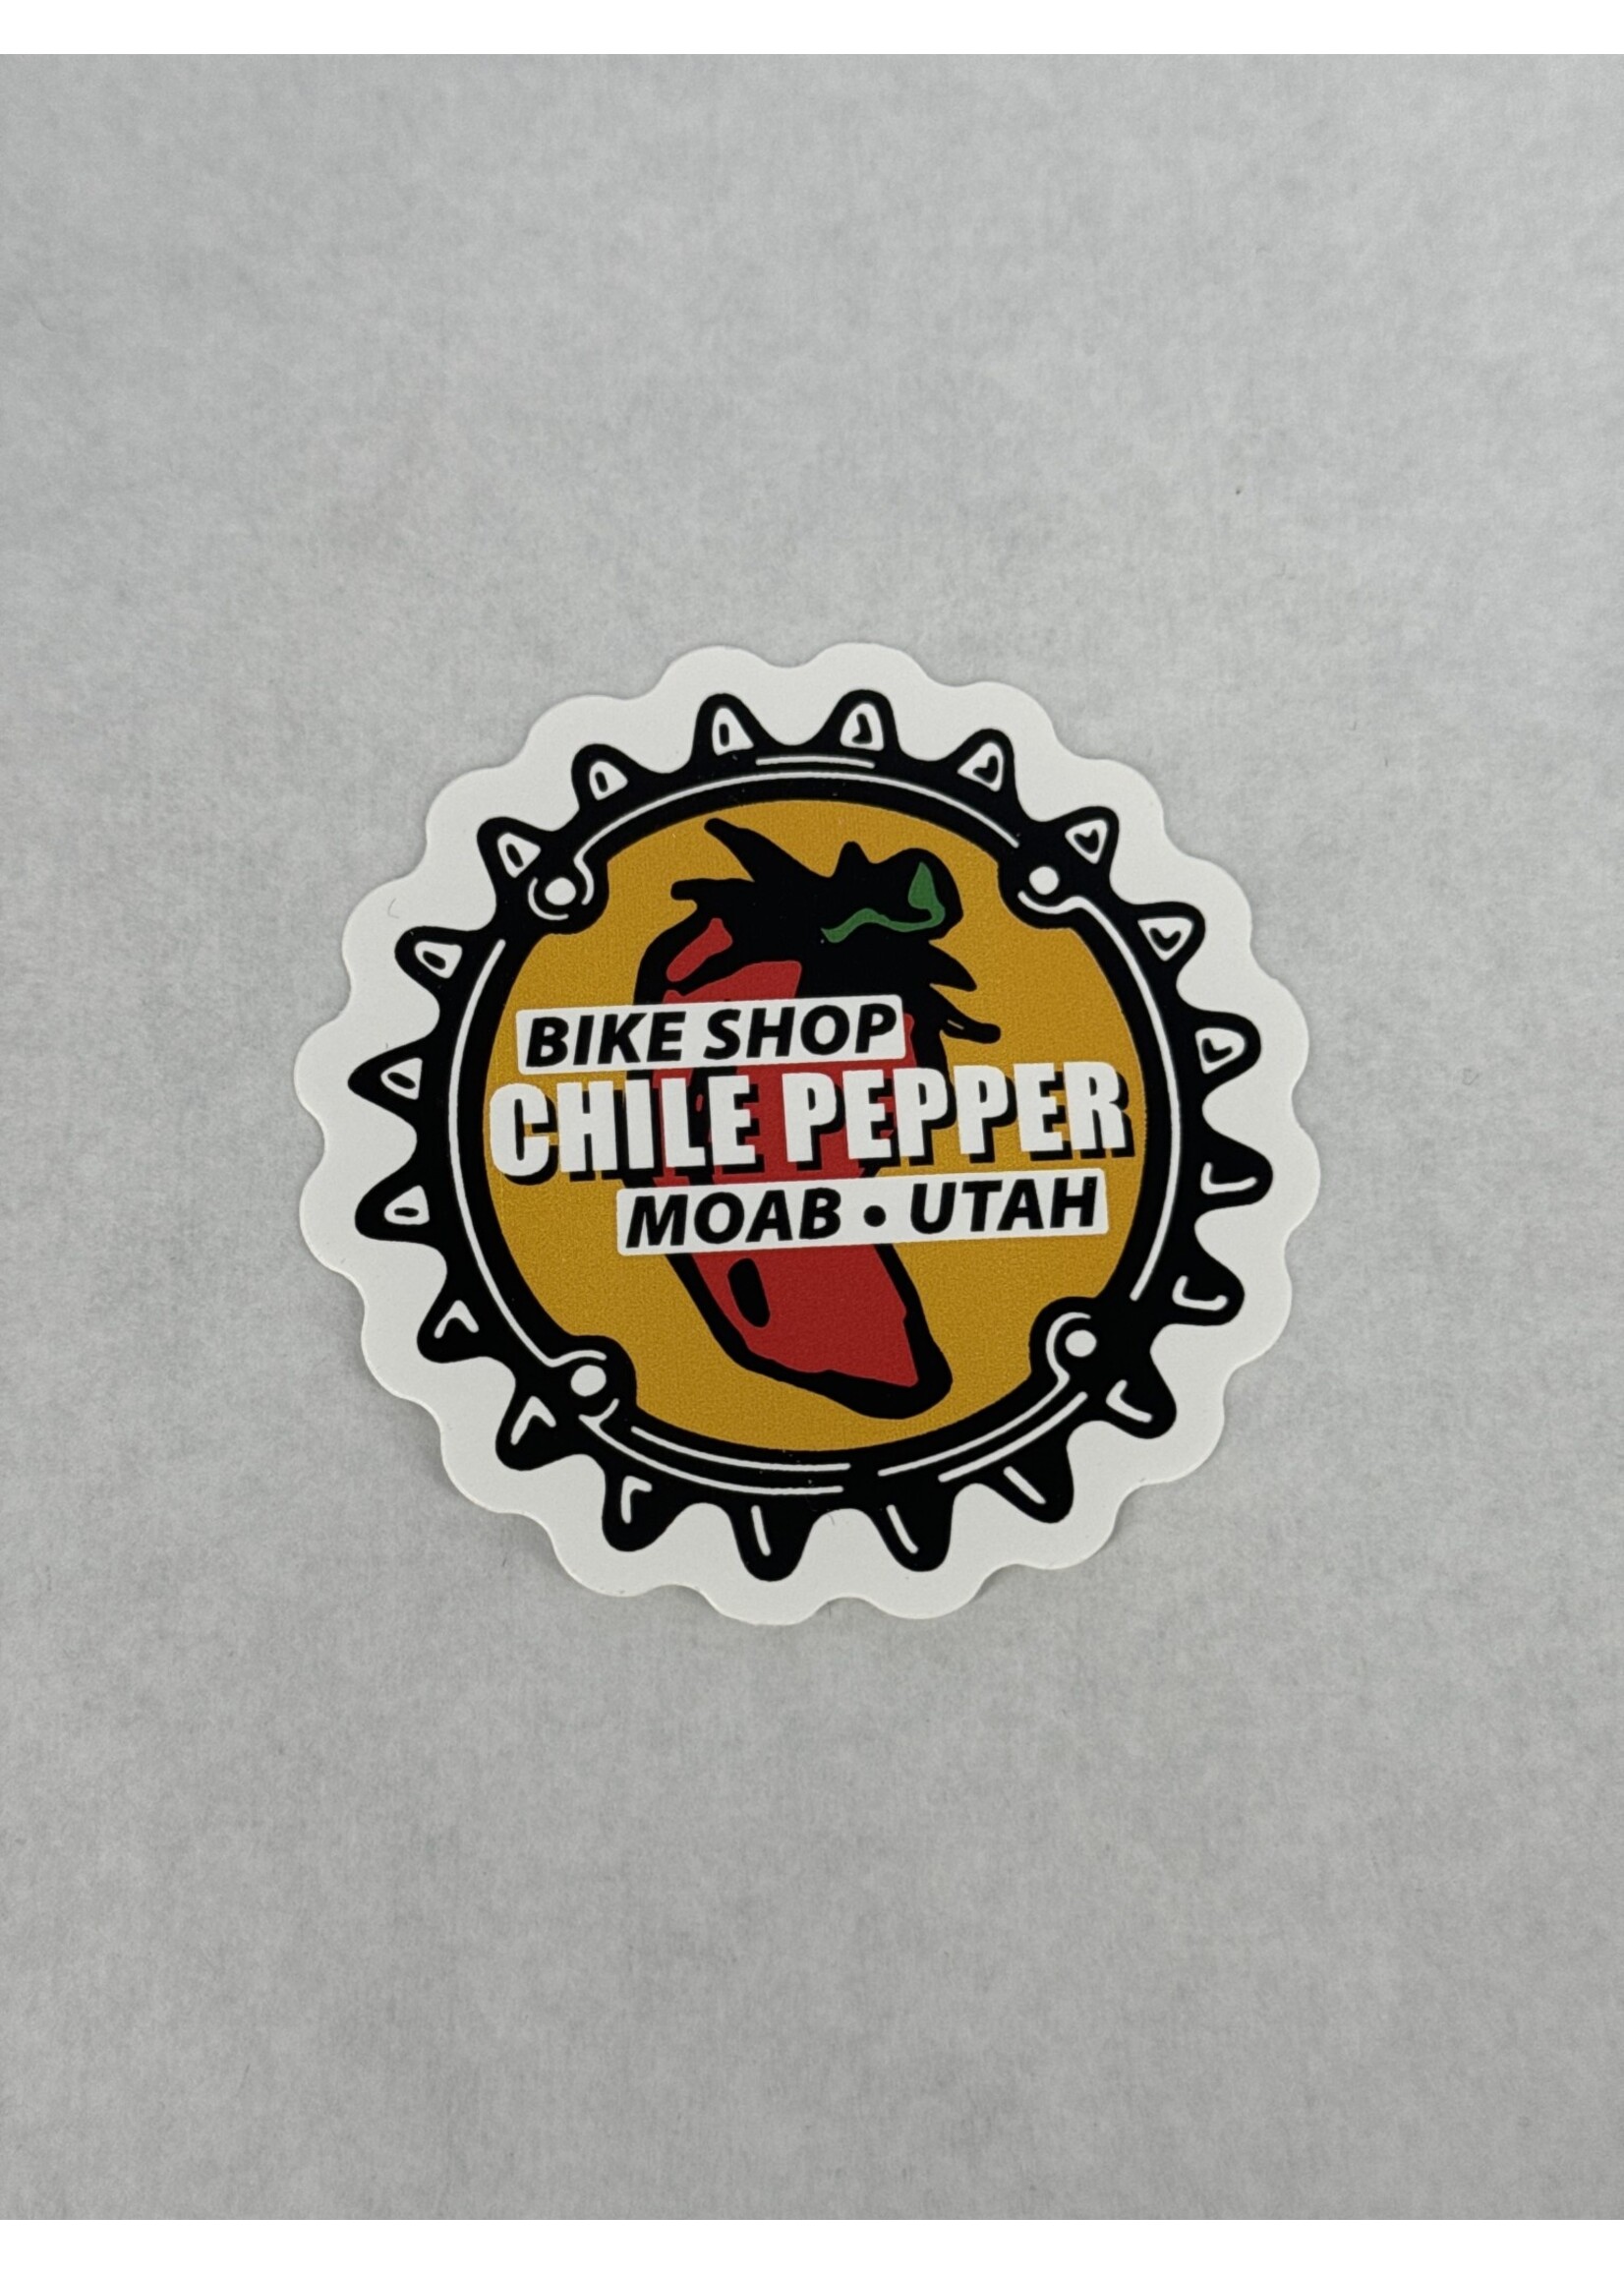 Chile Pepper Chile Pepper Chainring Sticker